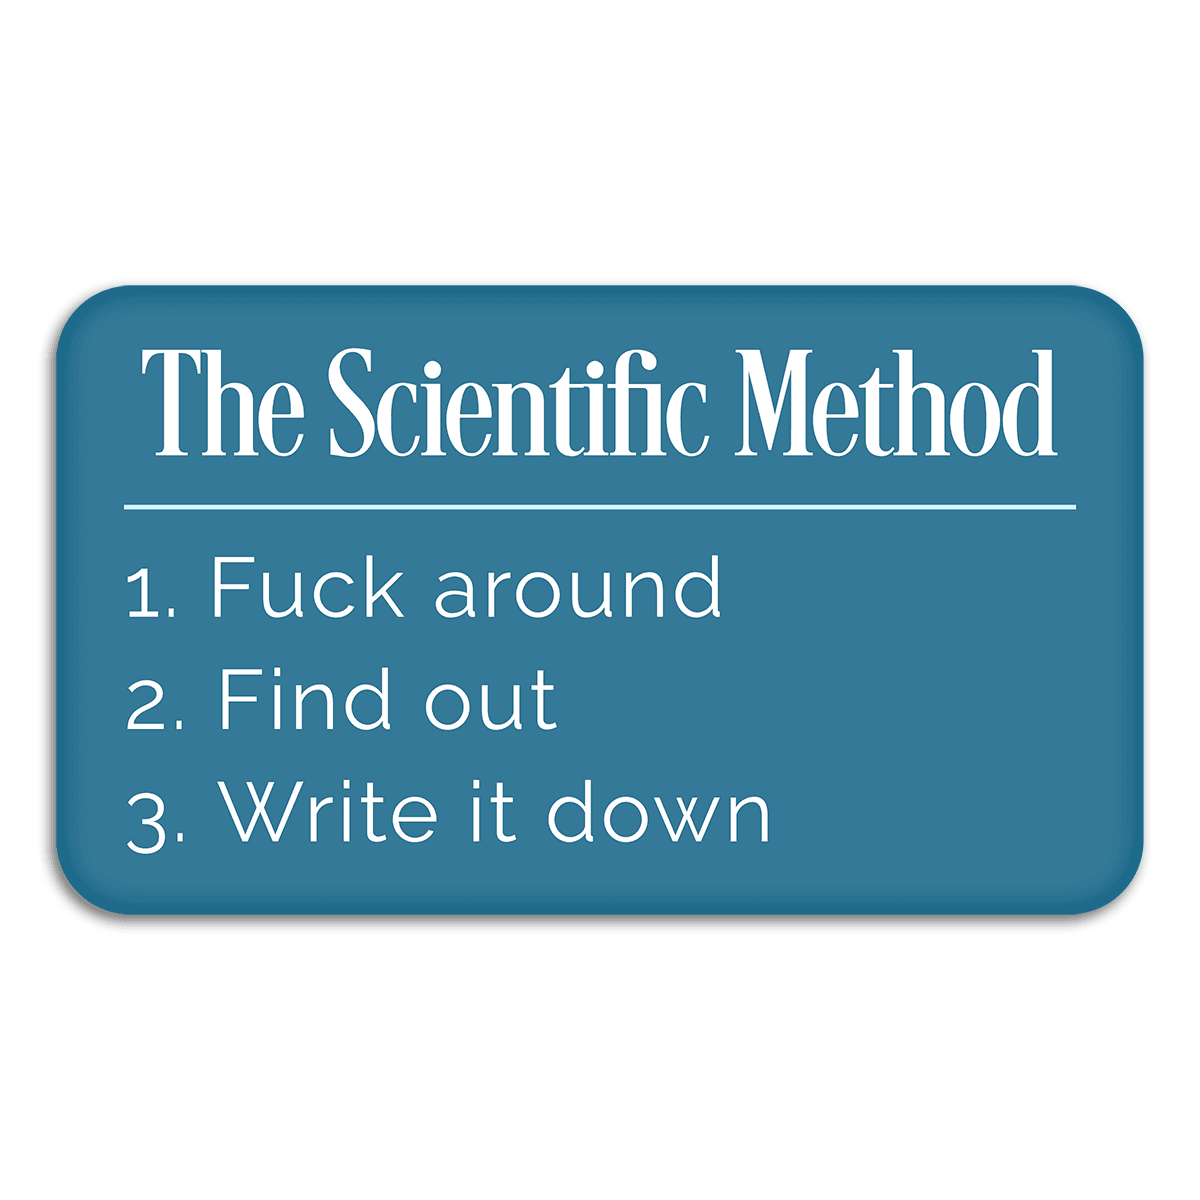 The Scientific Method Definition - Vinyl Sticker